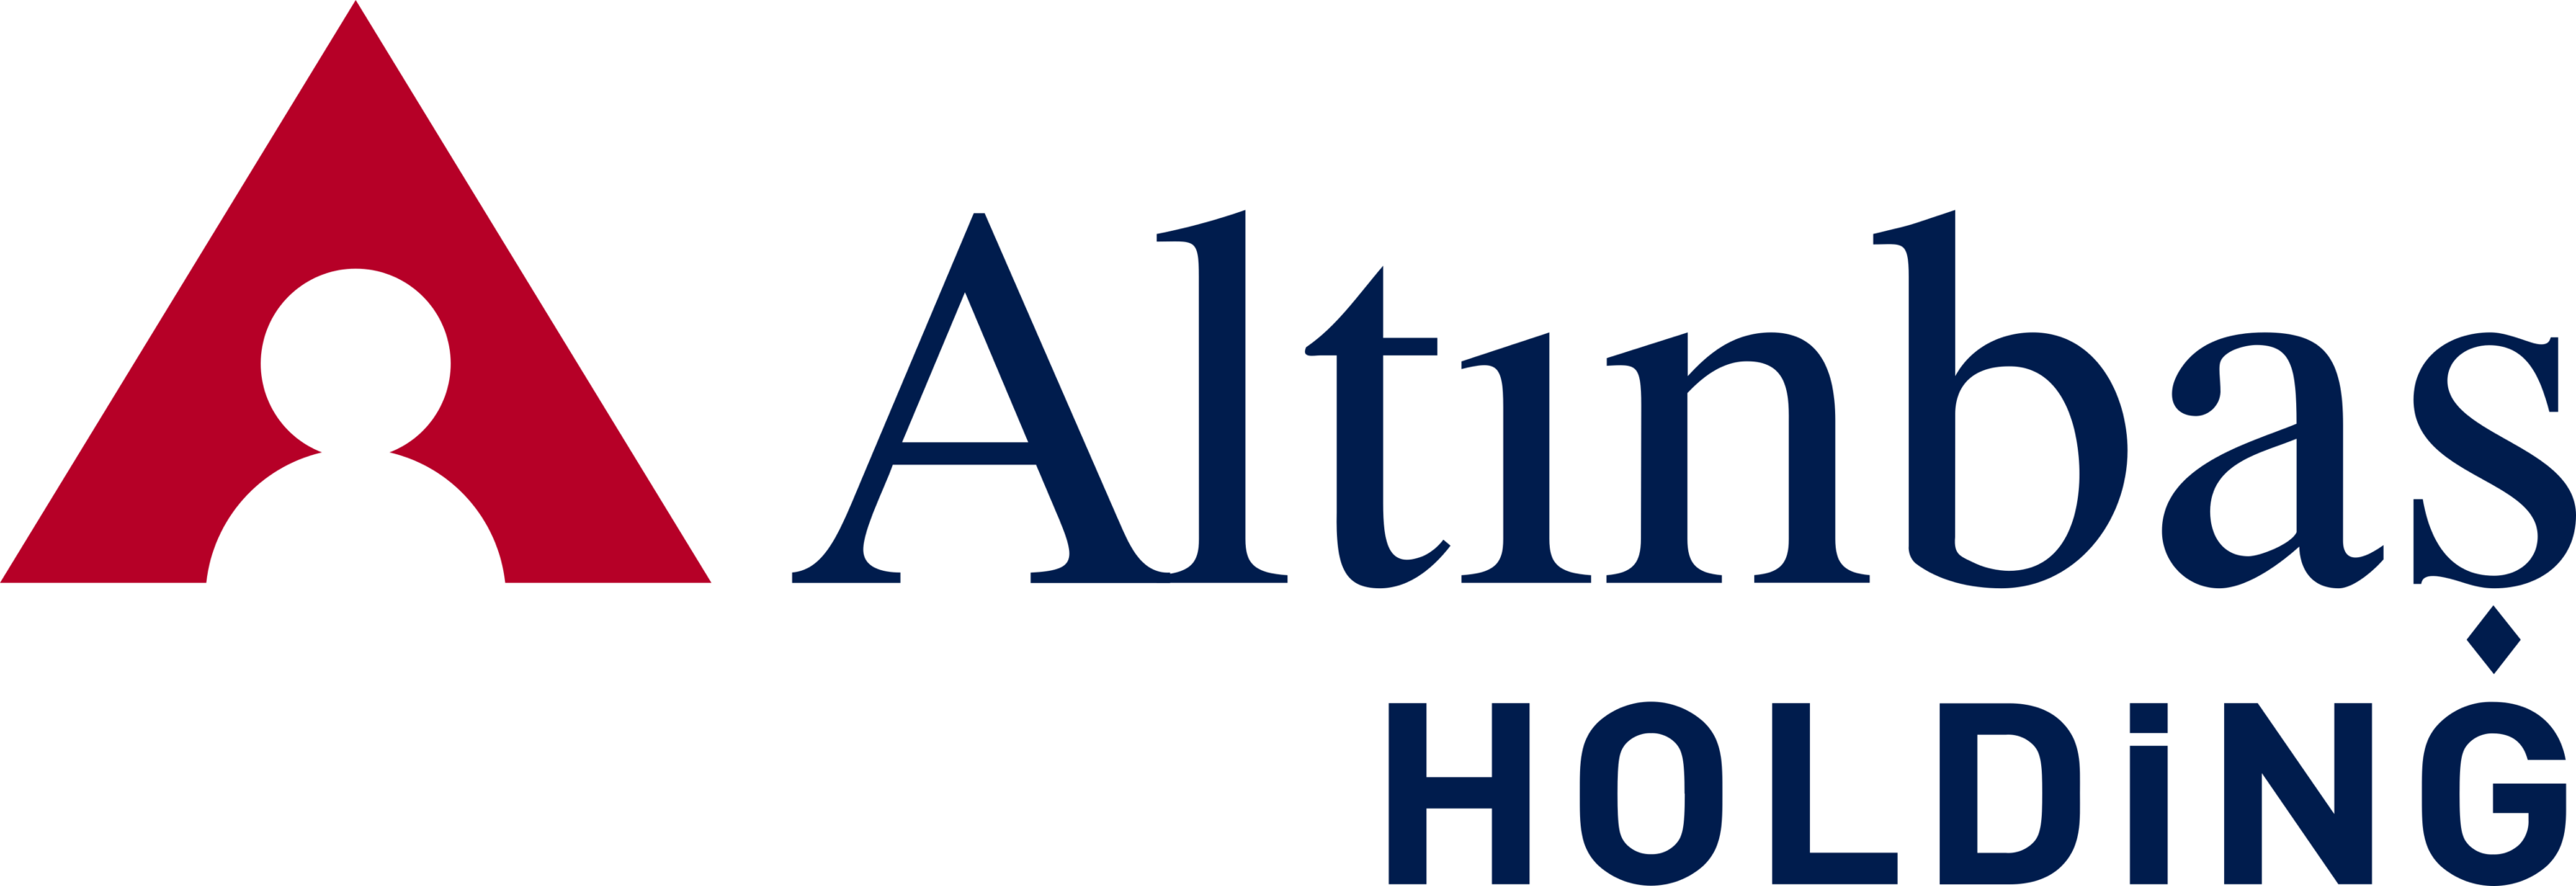 Altinbas Holding Logo